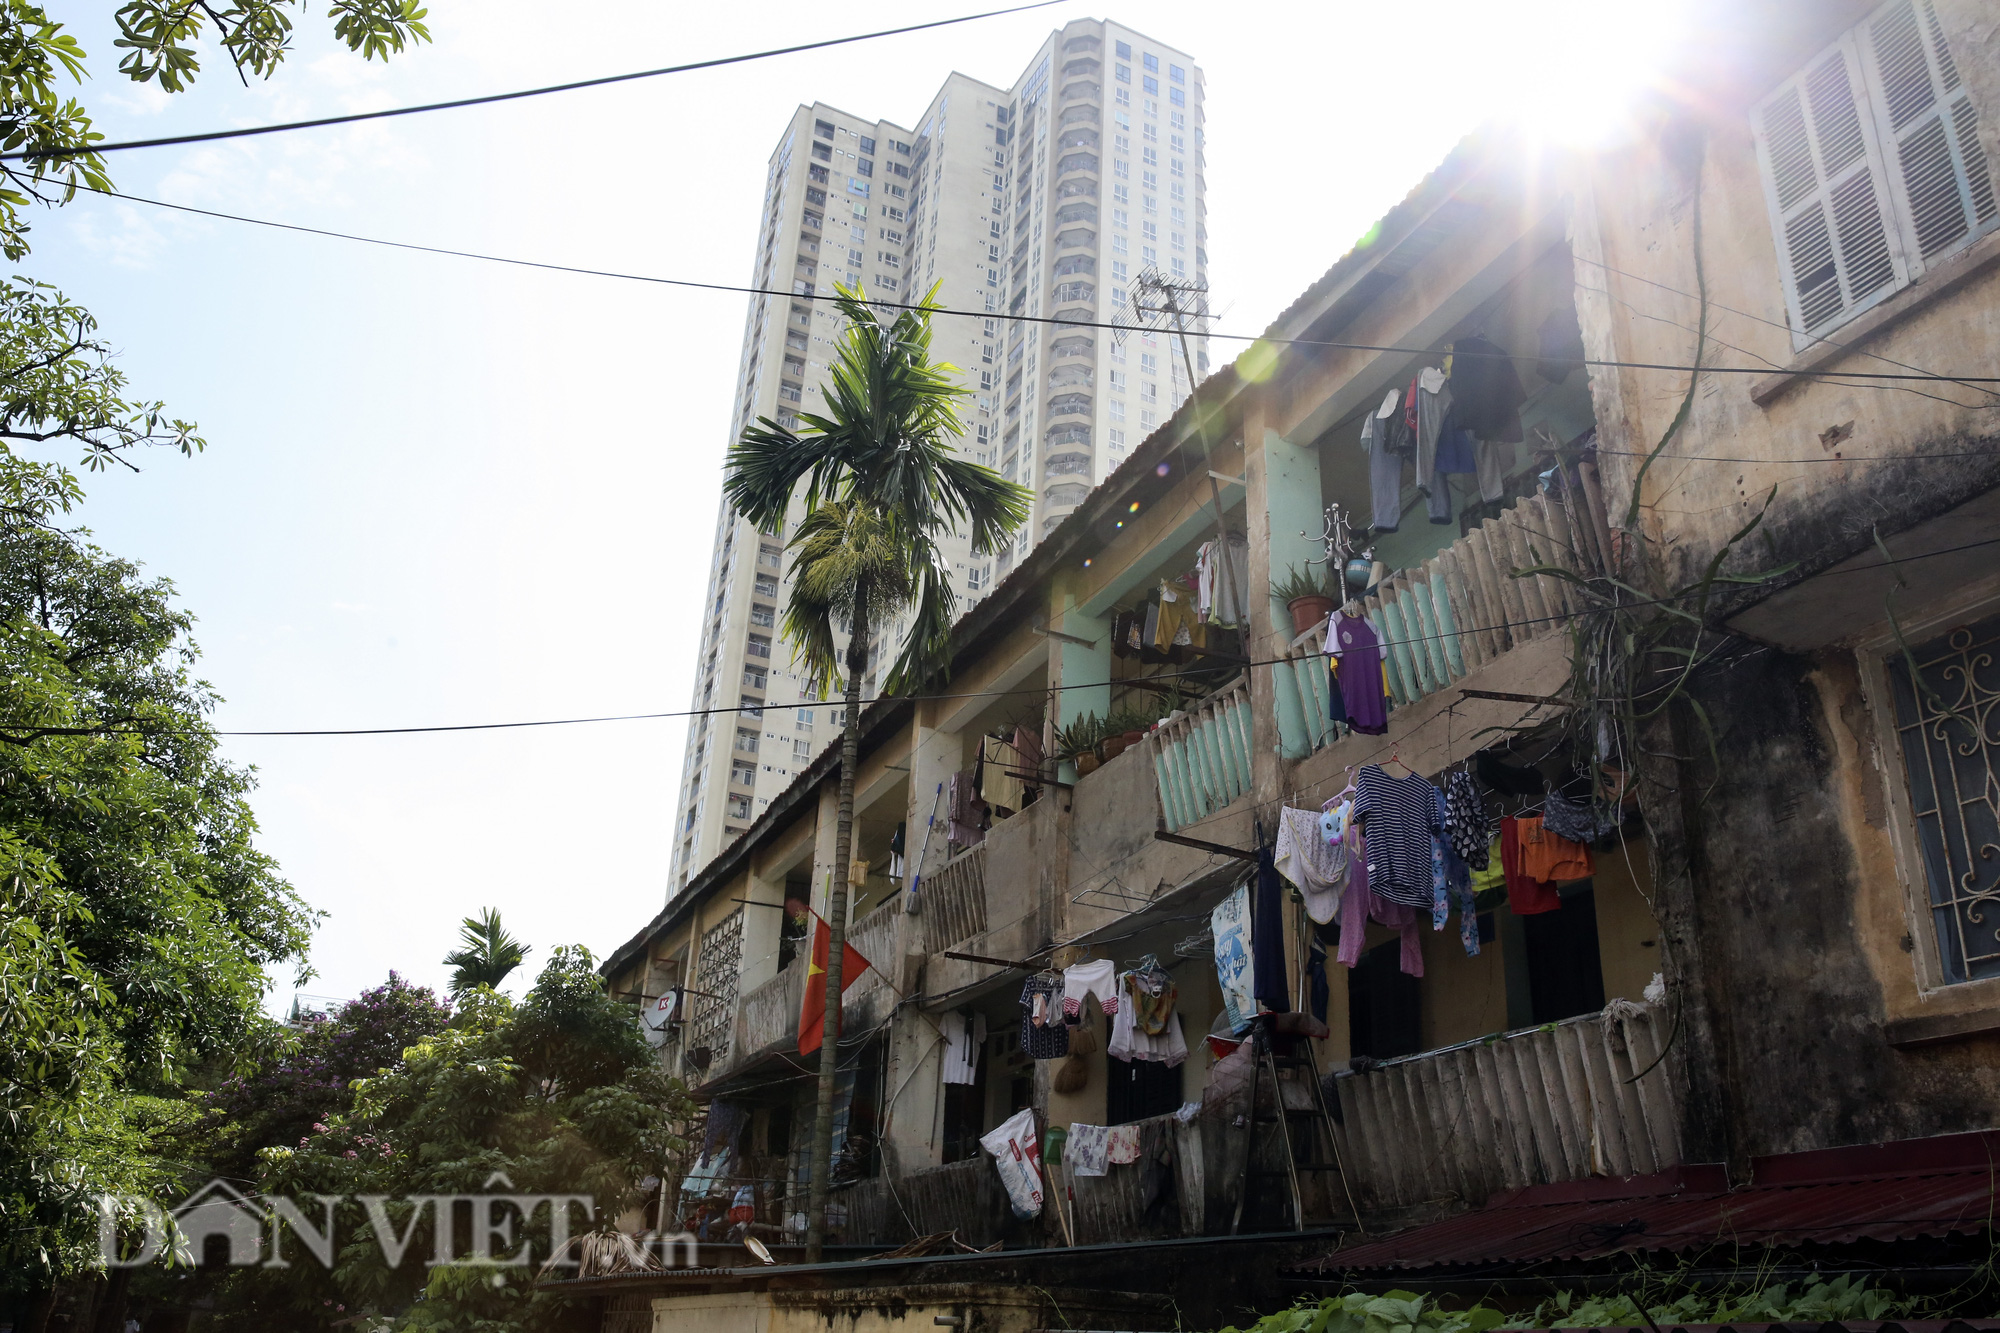 Hà Nội: Gần 150 hộ dân sống trong khu tập thể xuống cấp nghiêm trọng - Ảnh 8.